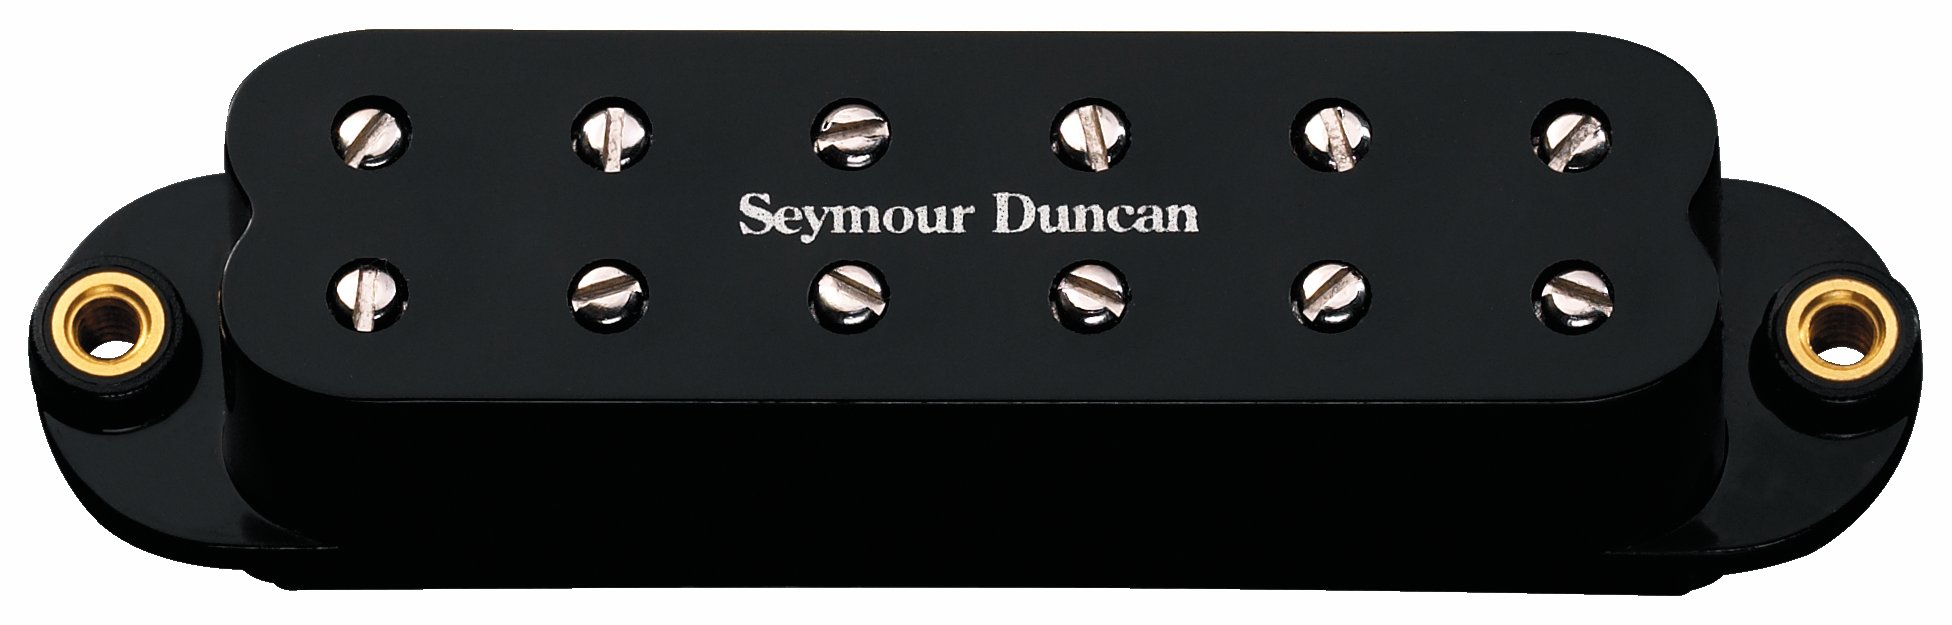 Seymour Duncan SL59-1N - Little '59 Strat, Neck Pickup - Black